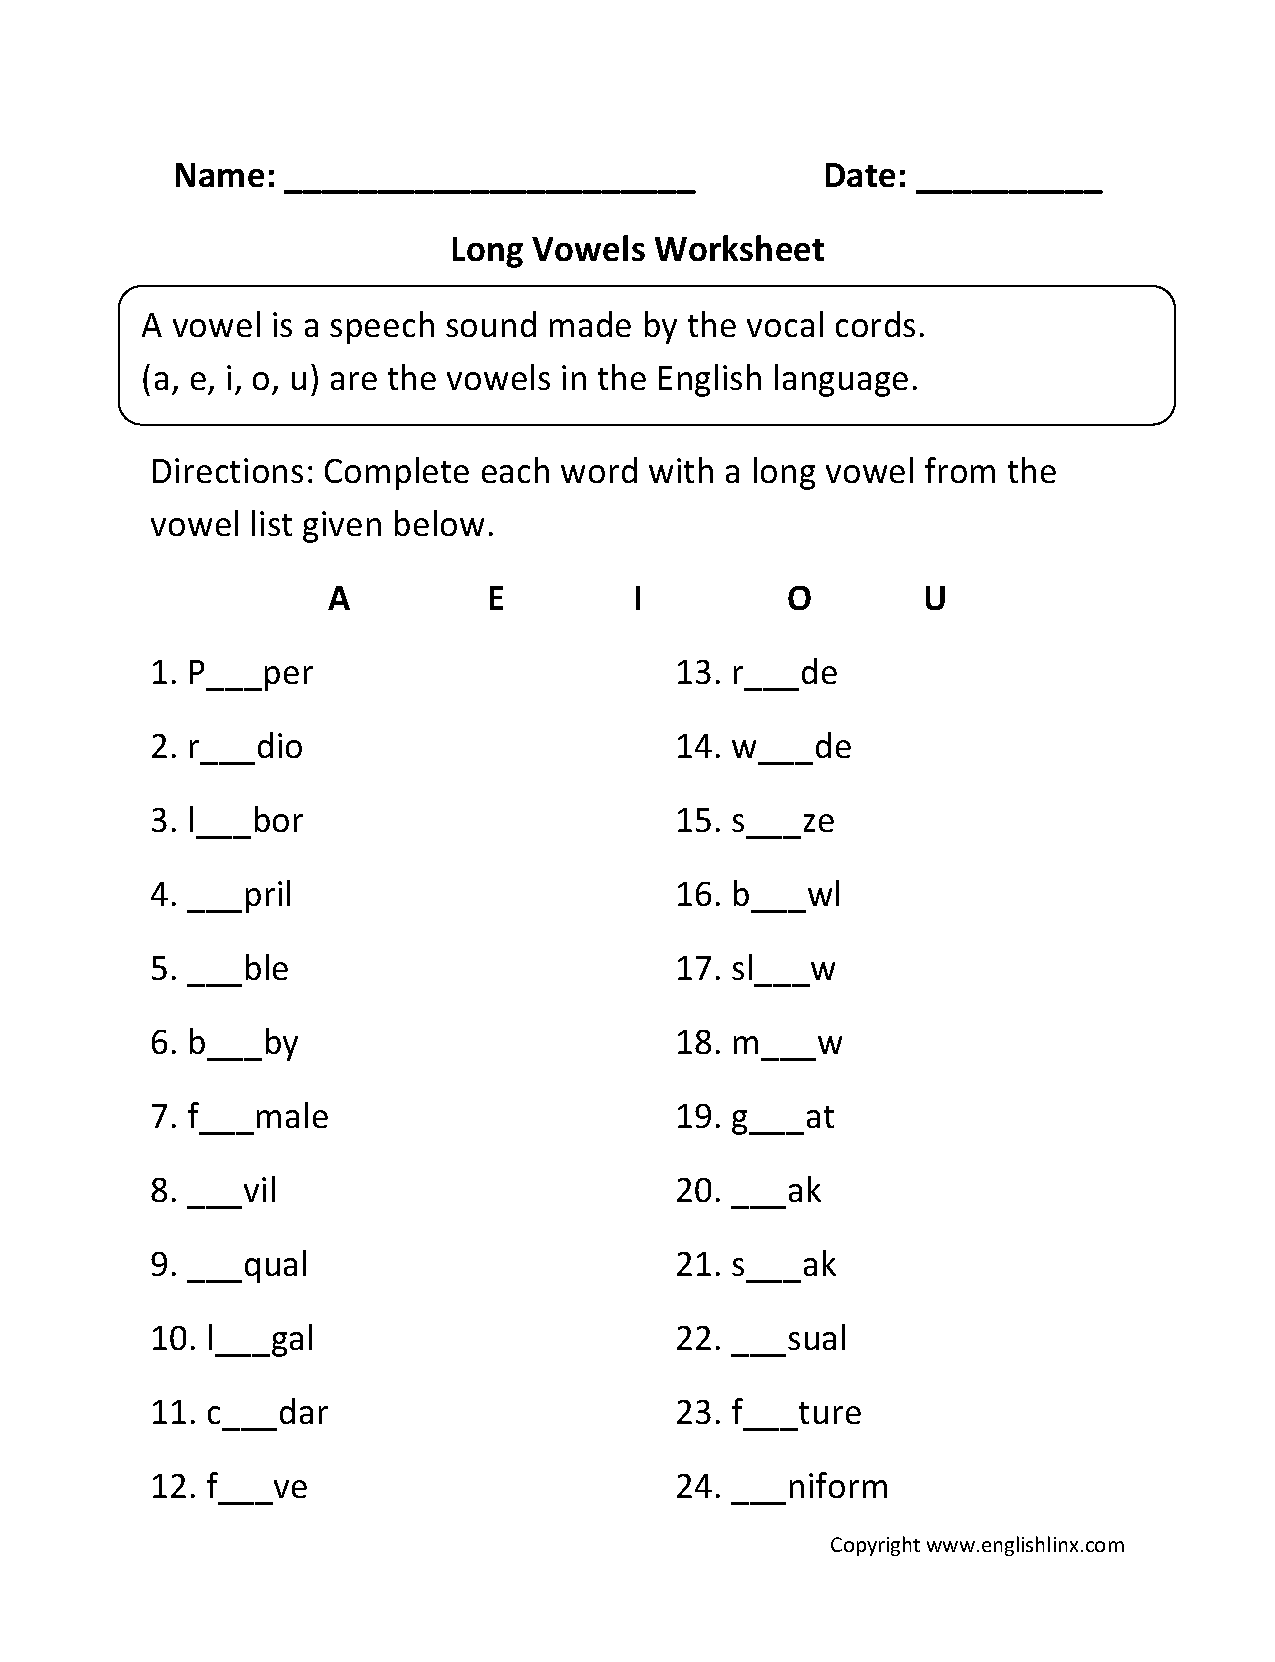 vowel-worksheets-short-and-long-vowel-worksheets